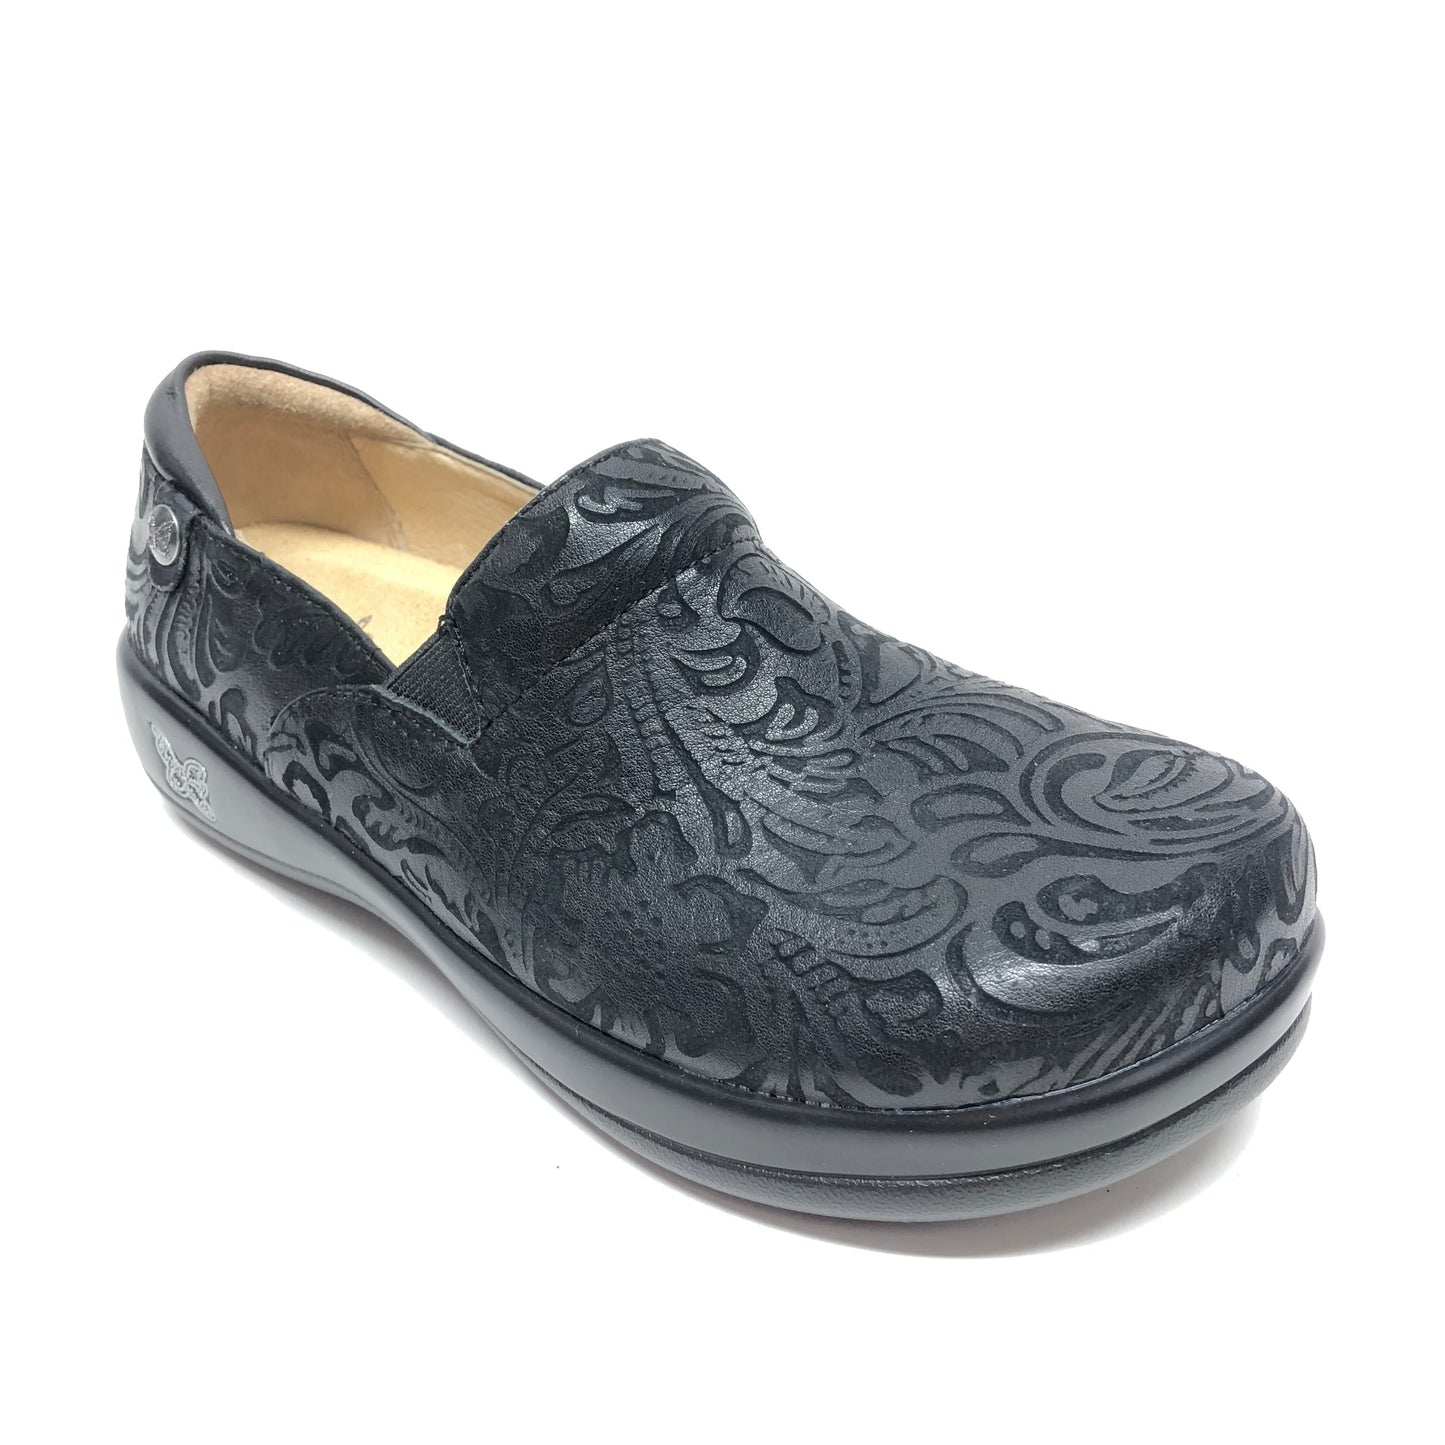 Black Shoes Flats Alegria, Size 7